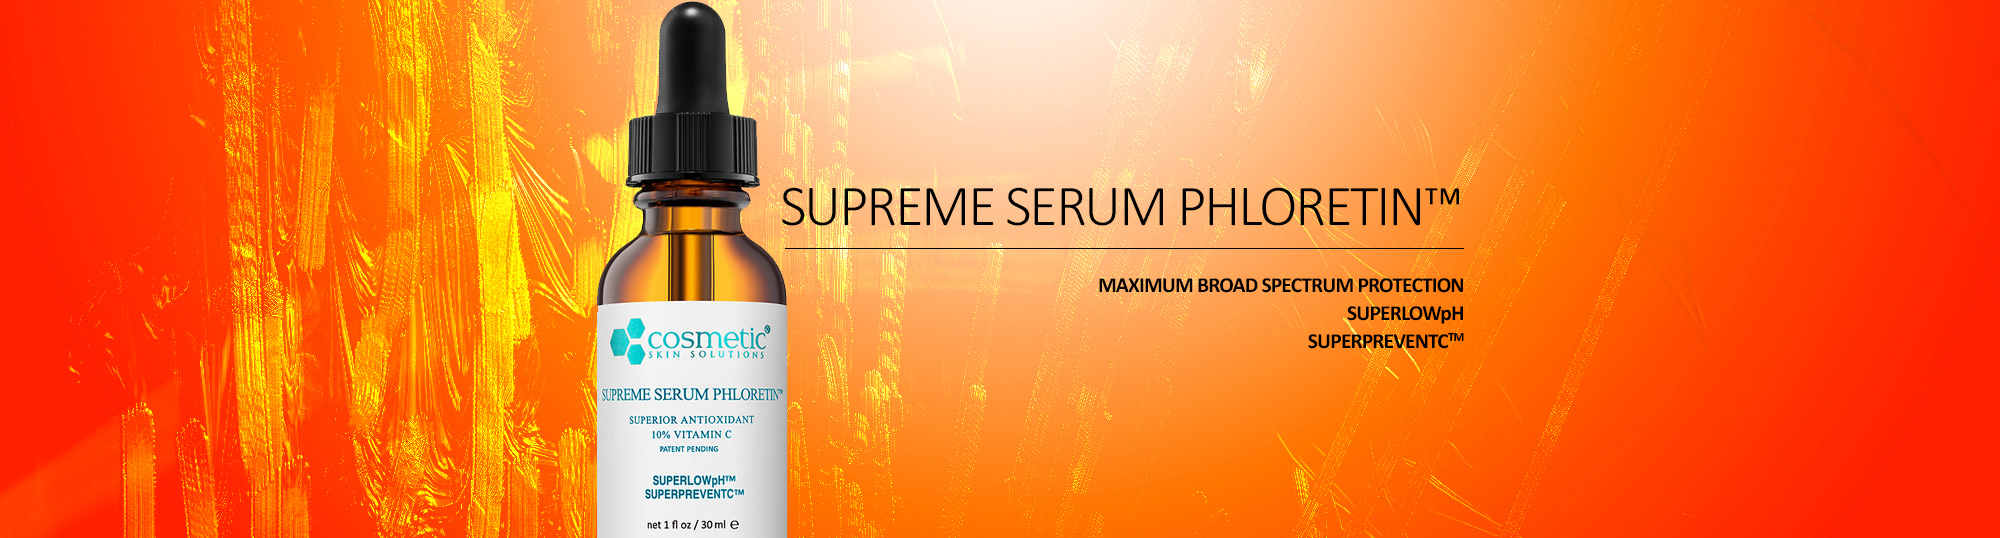 Supreme Serum Phloretin - Maximum Broad Spectrum Protection SUPERLOWpH SUPERPREVENTC™